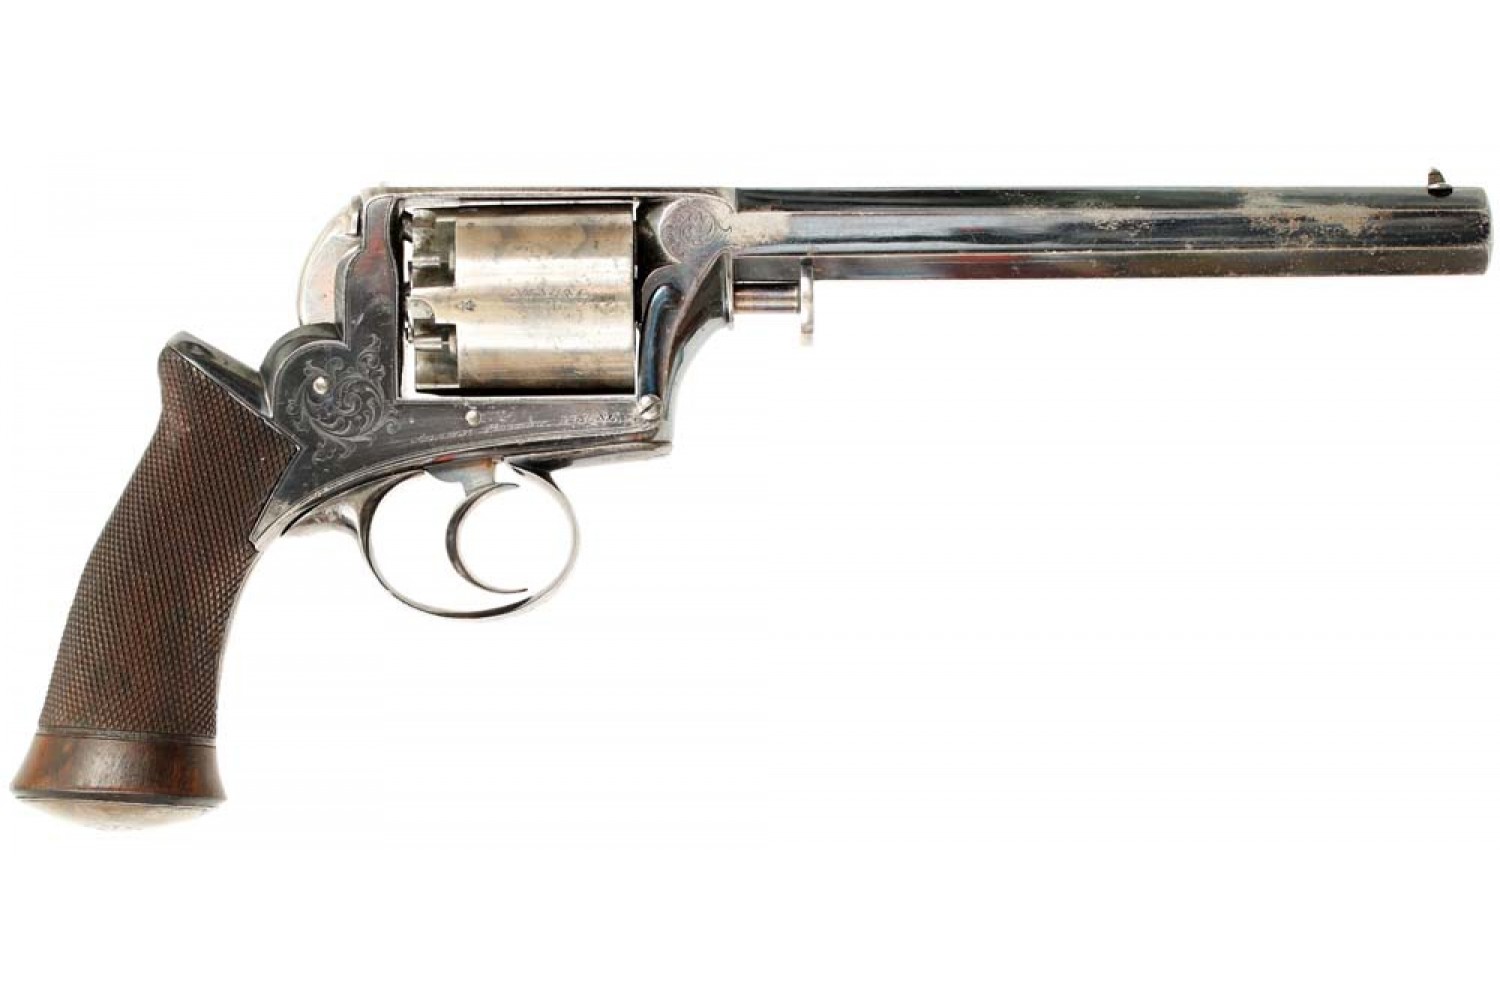 50 caliber revolver